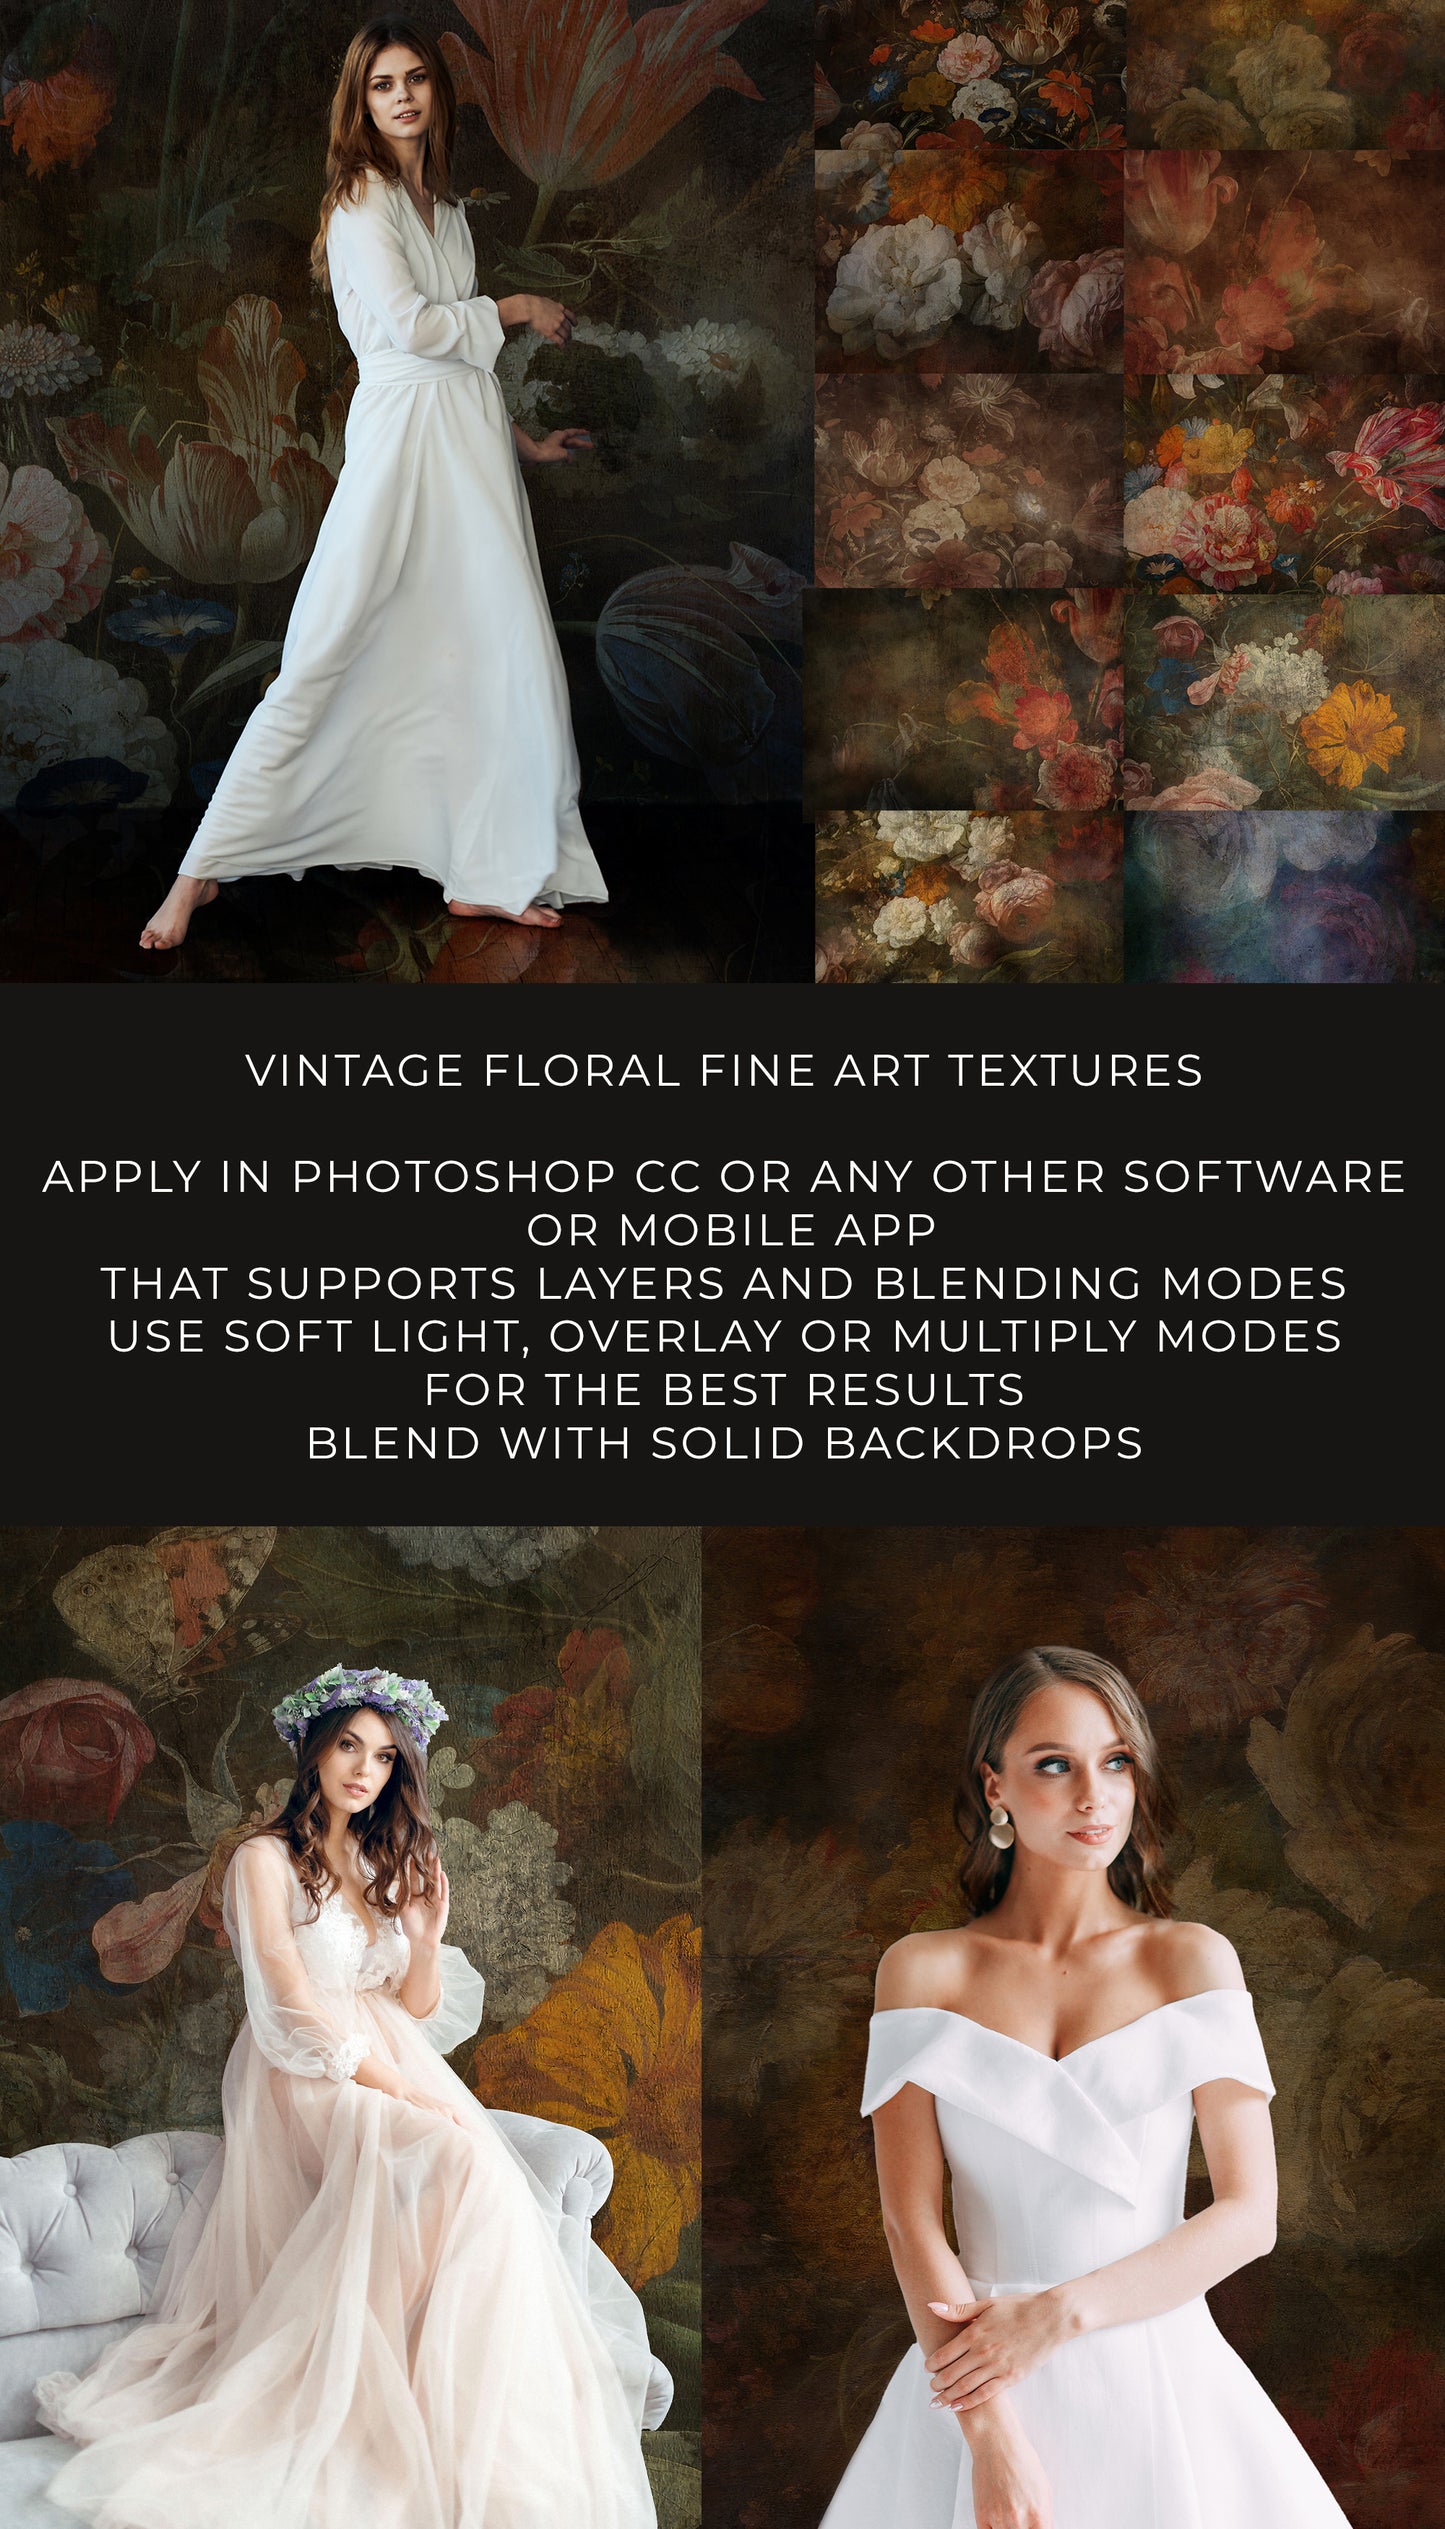 Moody VIntage Floral Fine Art Portrait Textures